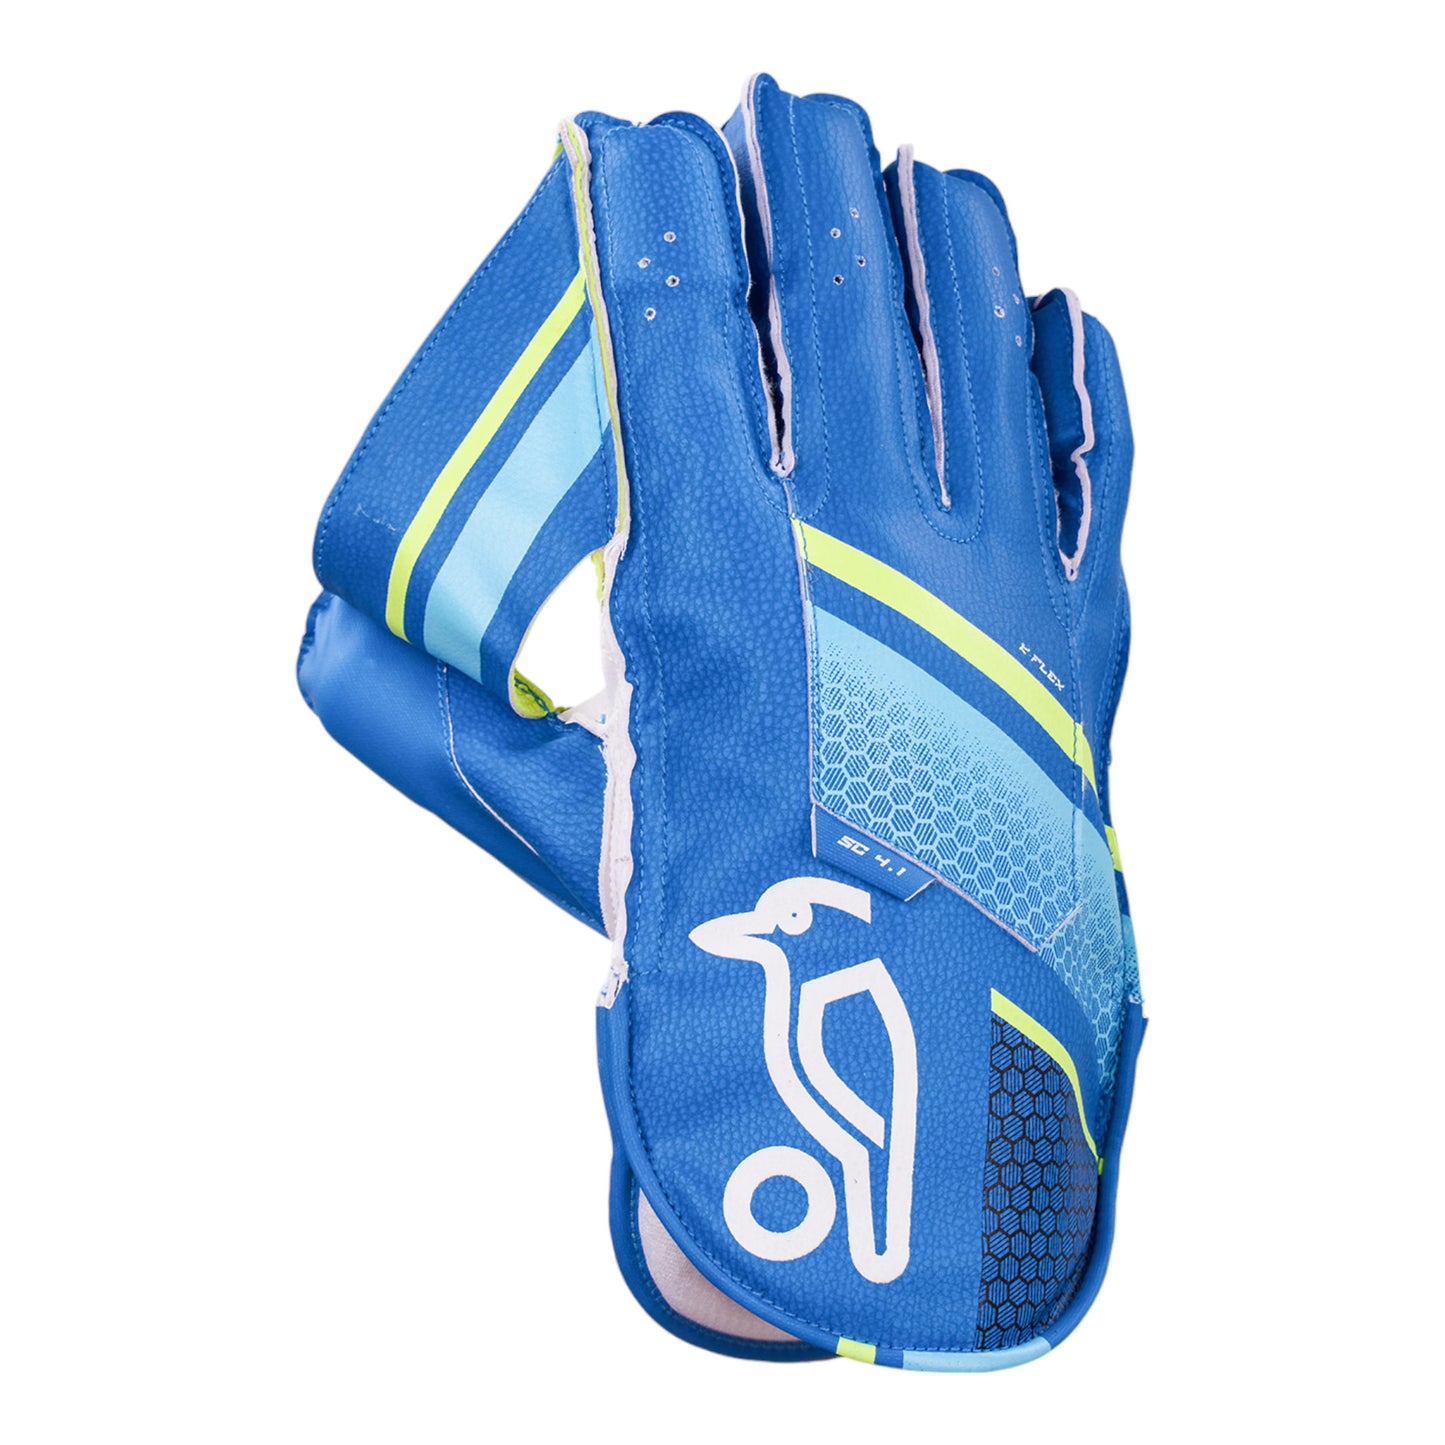 Kookaburra 4.1 Wicketkeeping Glove